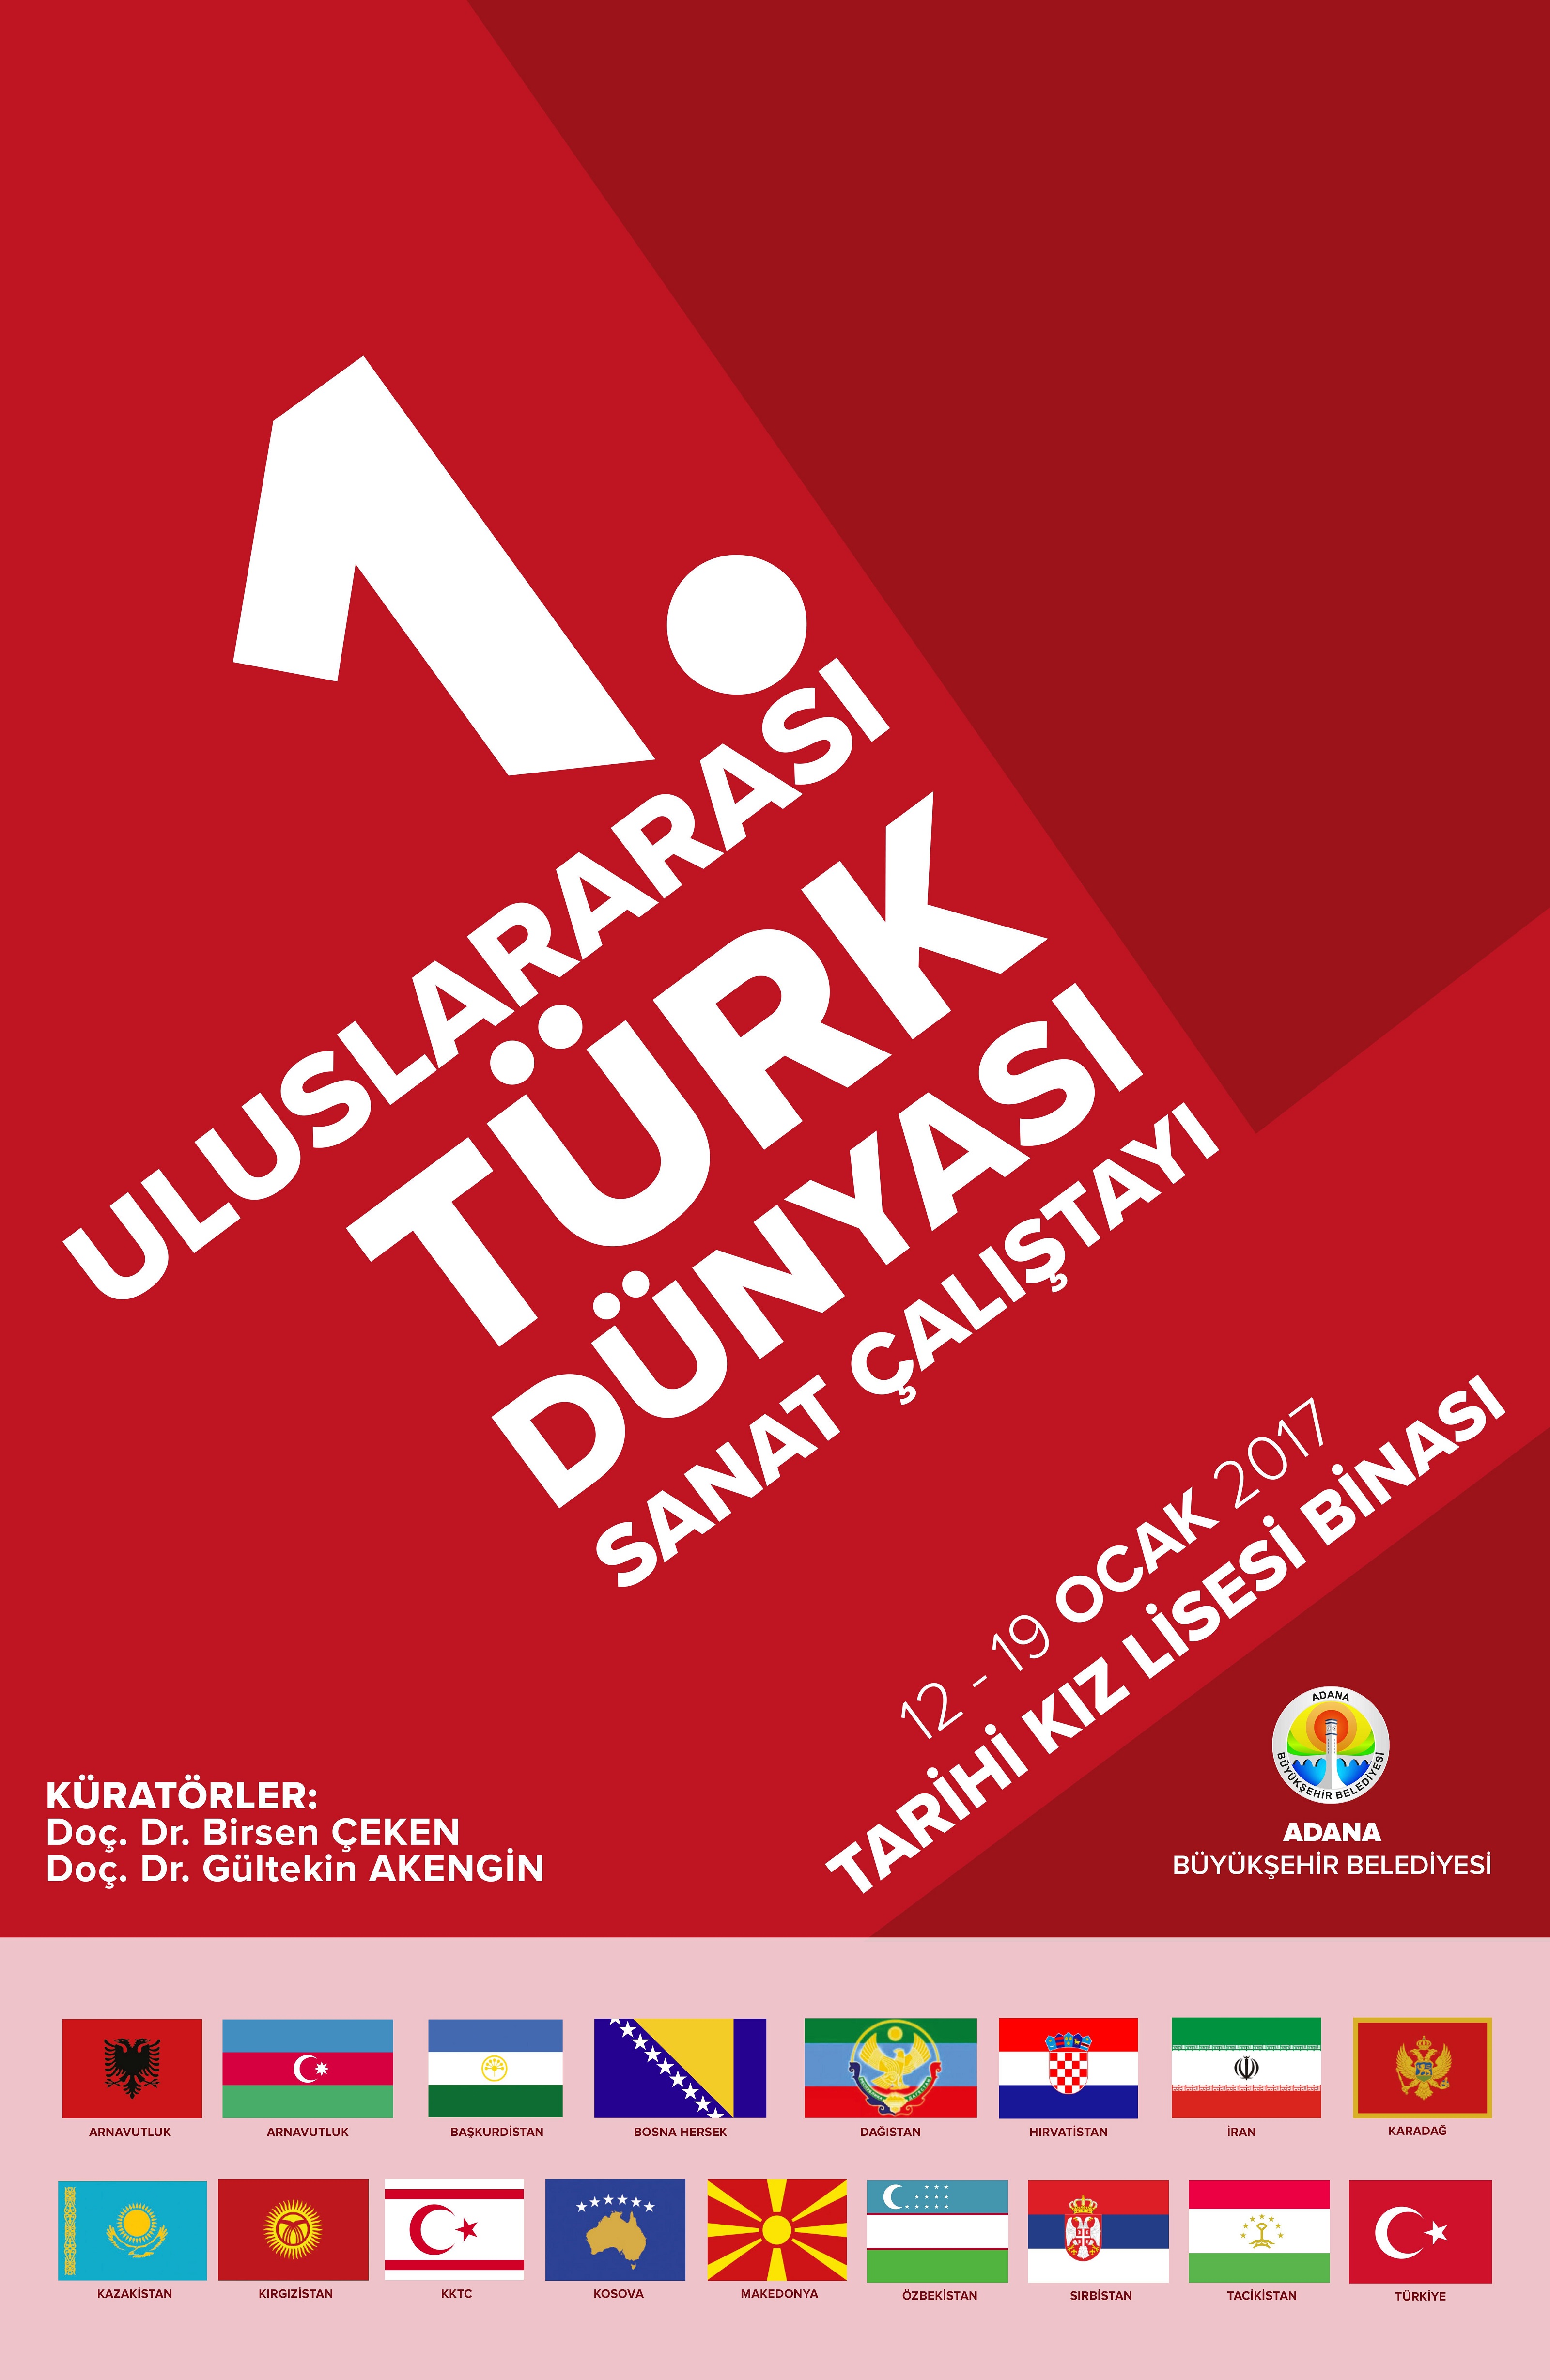 NEU participates in Turkish World Art Workshop